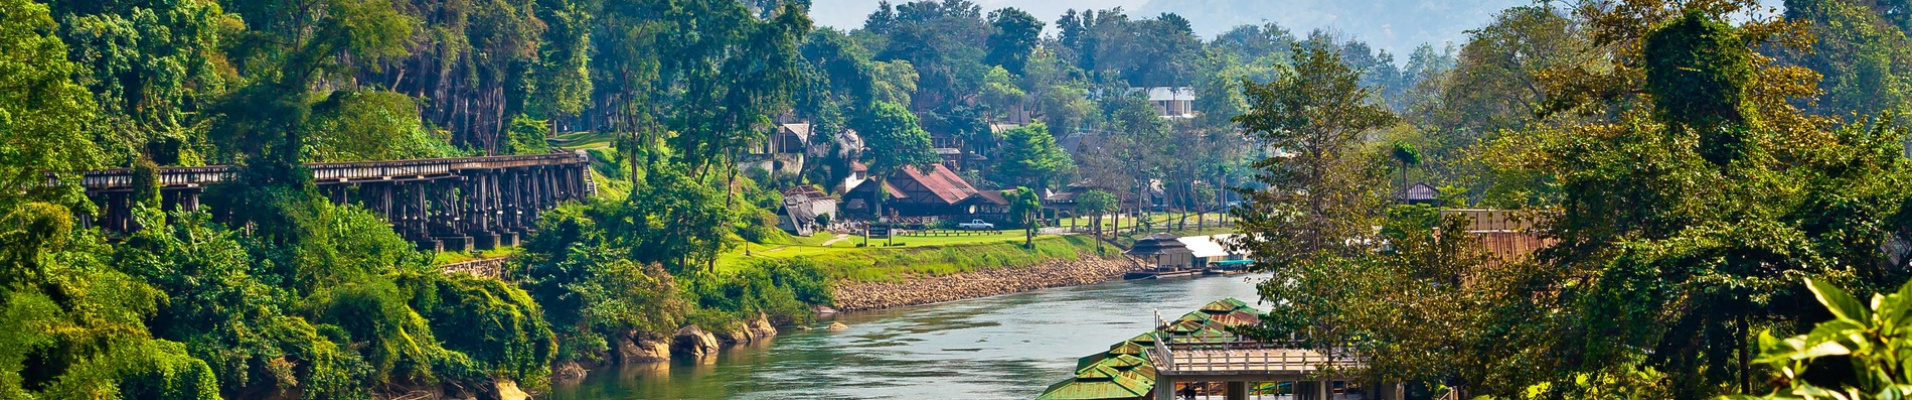 riviere-thailande